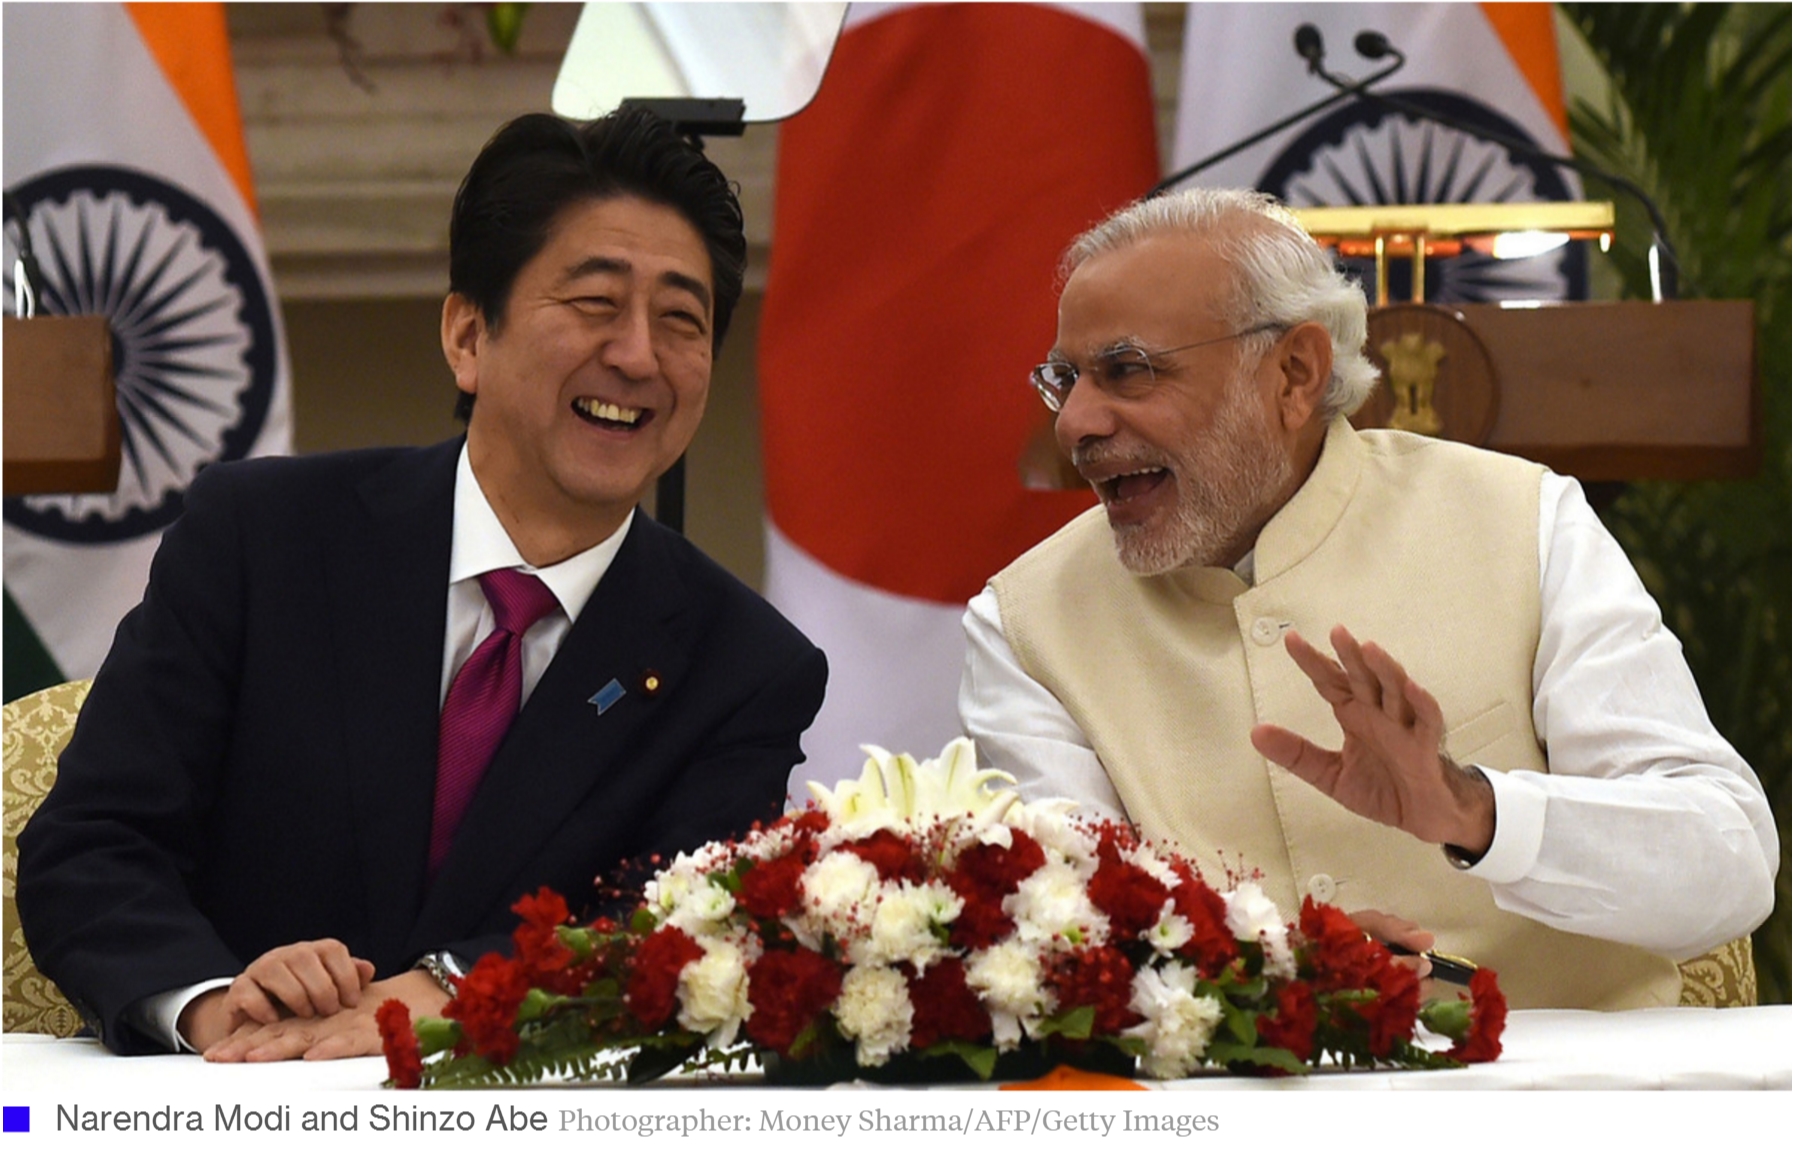 Shinzo Abe s’est rendu ce week-end en Inde pour une visite de trois jours, durant laquelle les relations entre Tokyo et New Delhi ont connu un grand rapprochement. Copie d’écran de Bloomberg Business, le 14 décembre 2015.